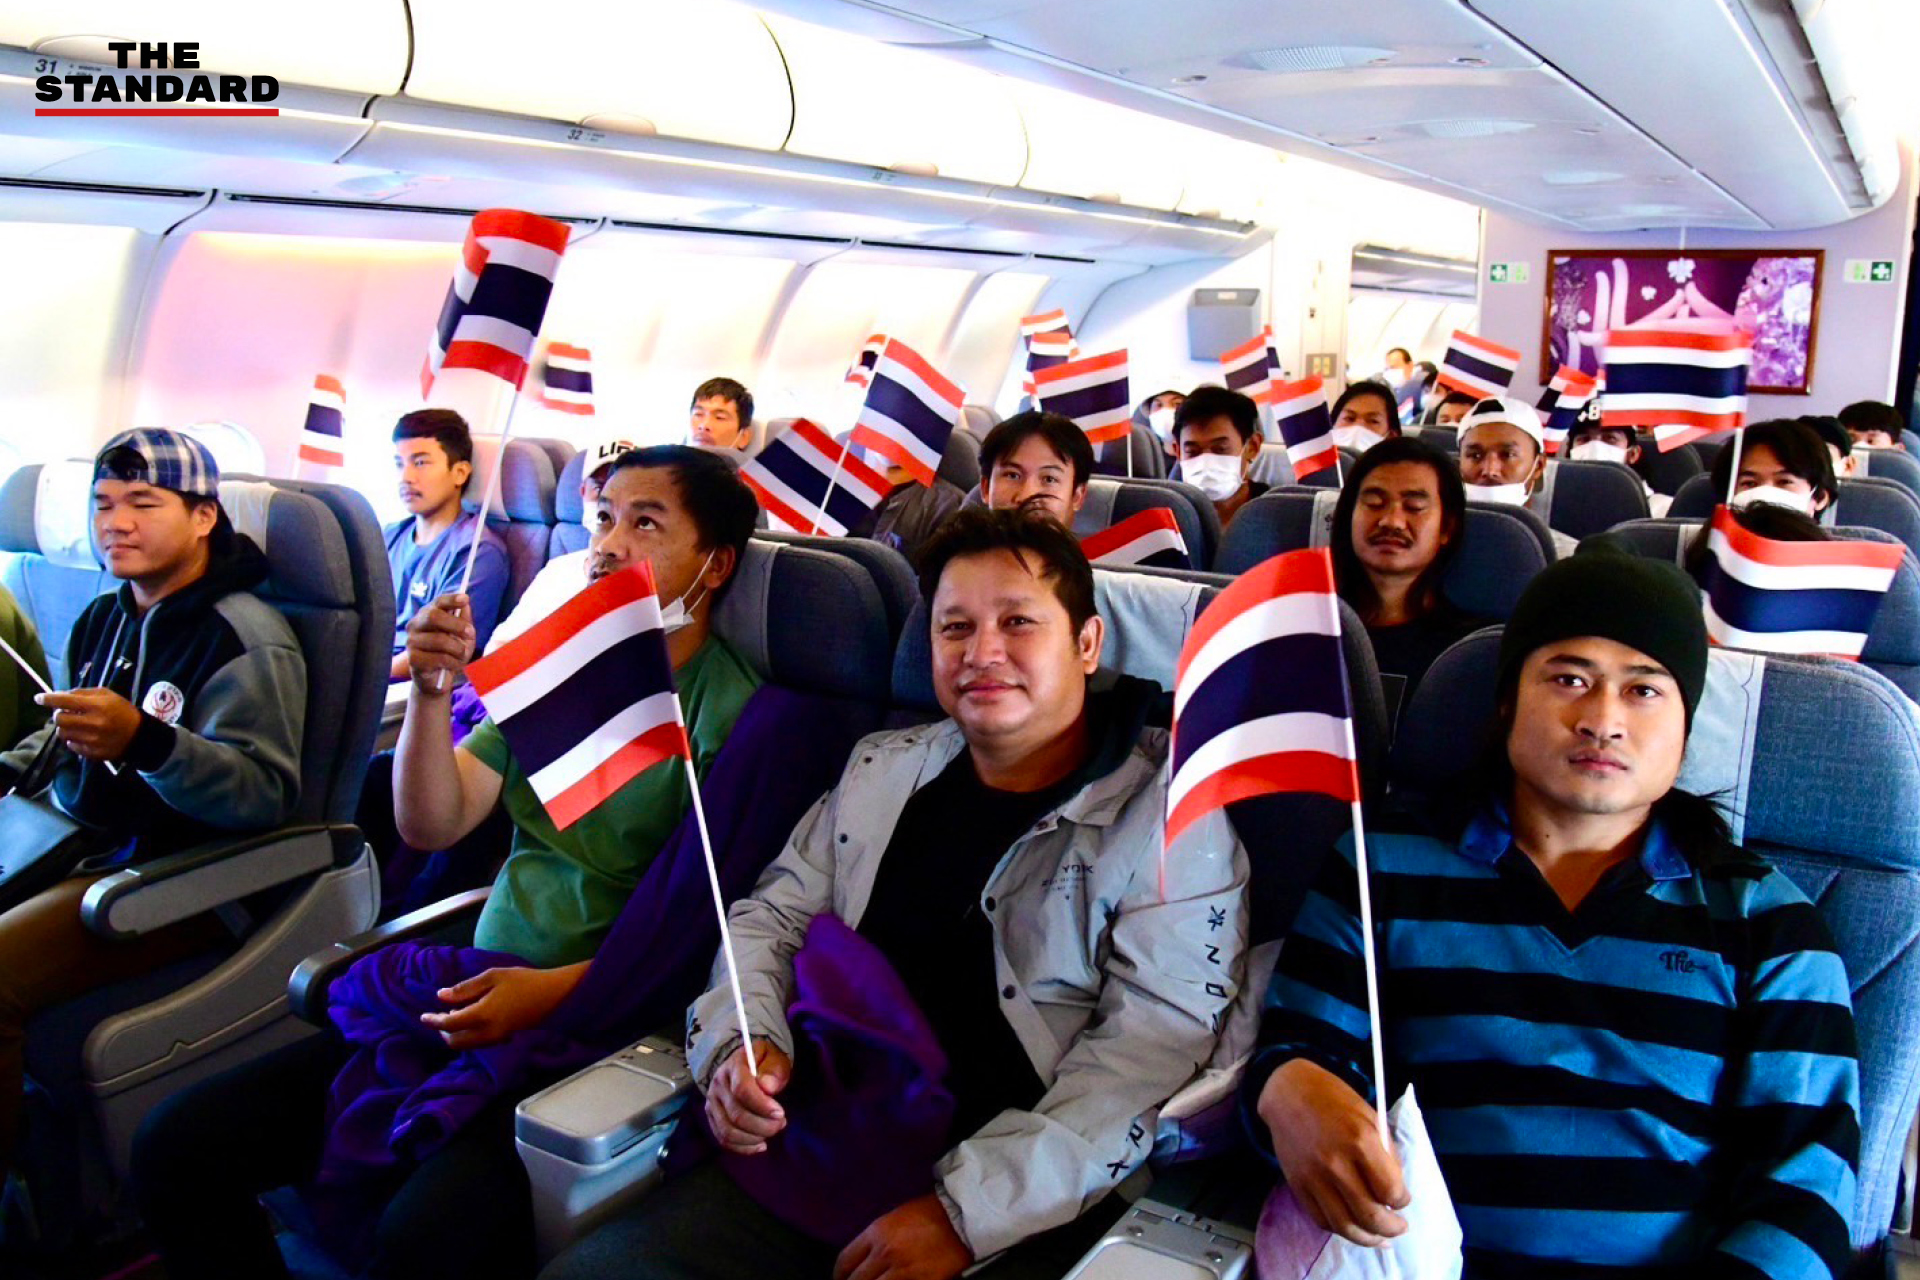 ทอ. อพยพ 130 คนไทยในอิสราเอลกลับประเทศ ‘เที่ยวแรก’ ประสบความสำเร็จ ทุกคนปลอดภัย เตรียมบินเที่ยวต่อไป 18 ต.ค. นี้